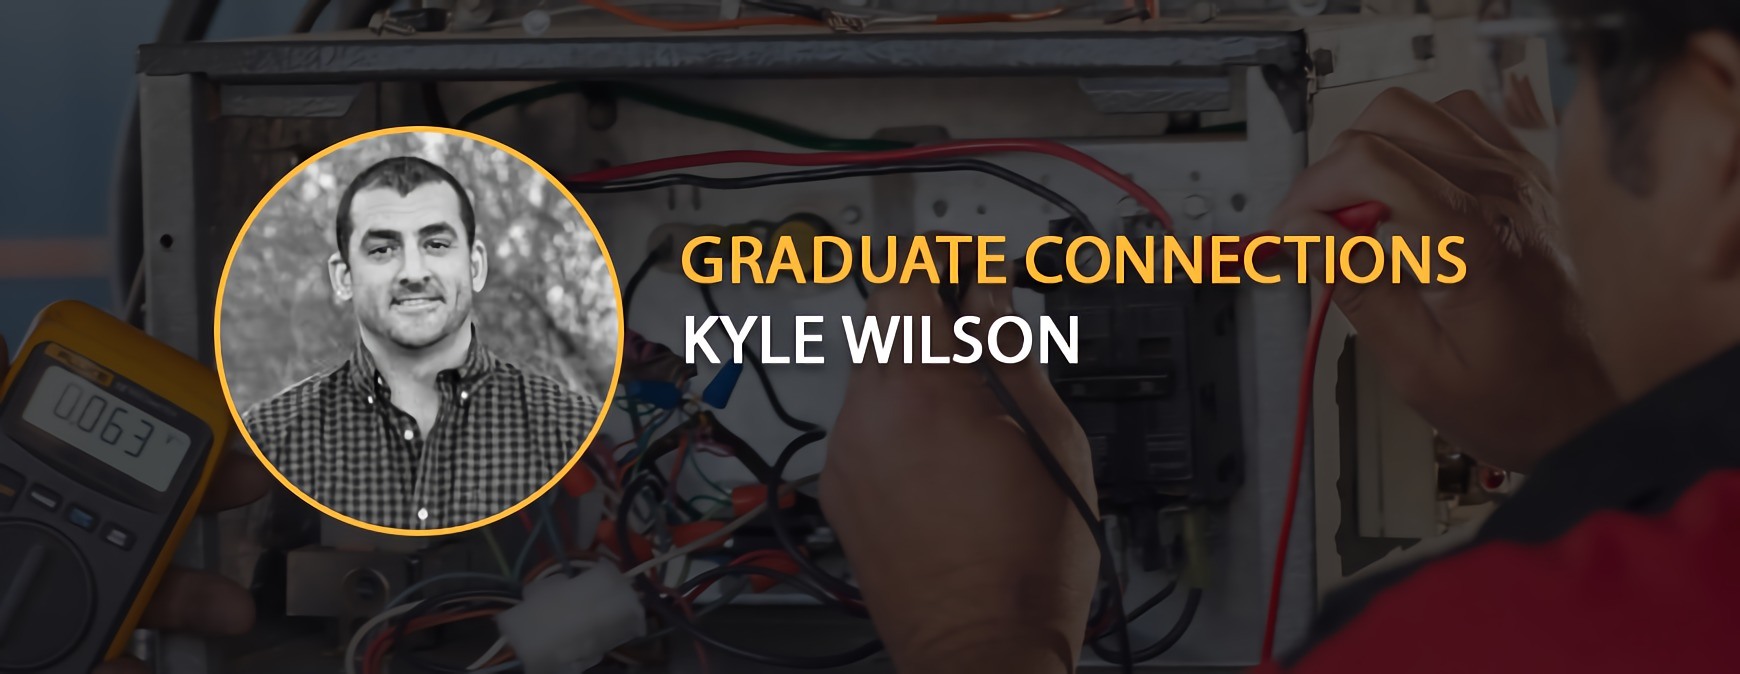 Graduate Connection Kyle Wilson